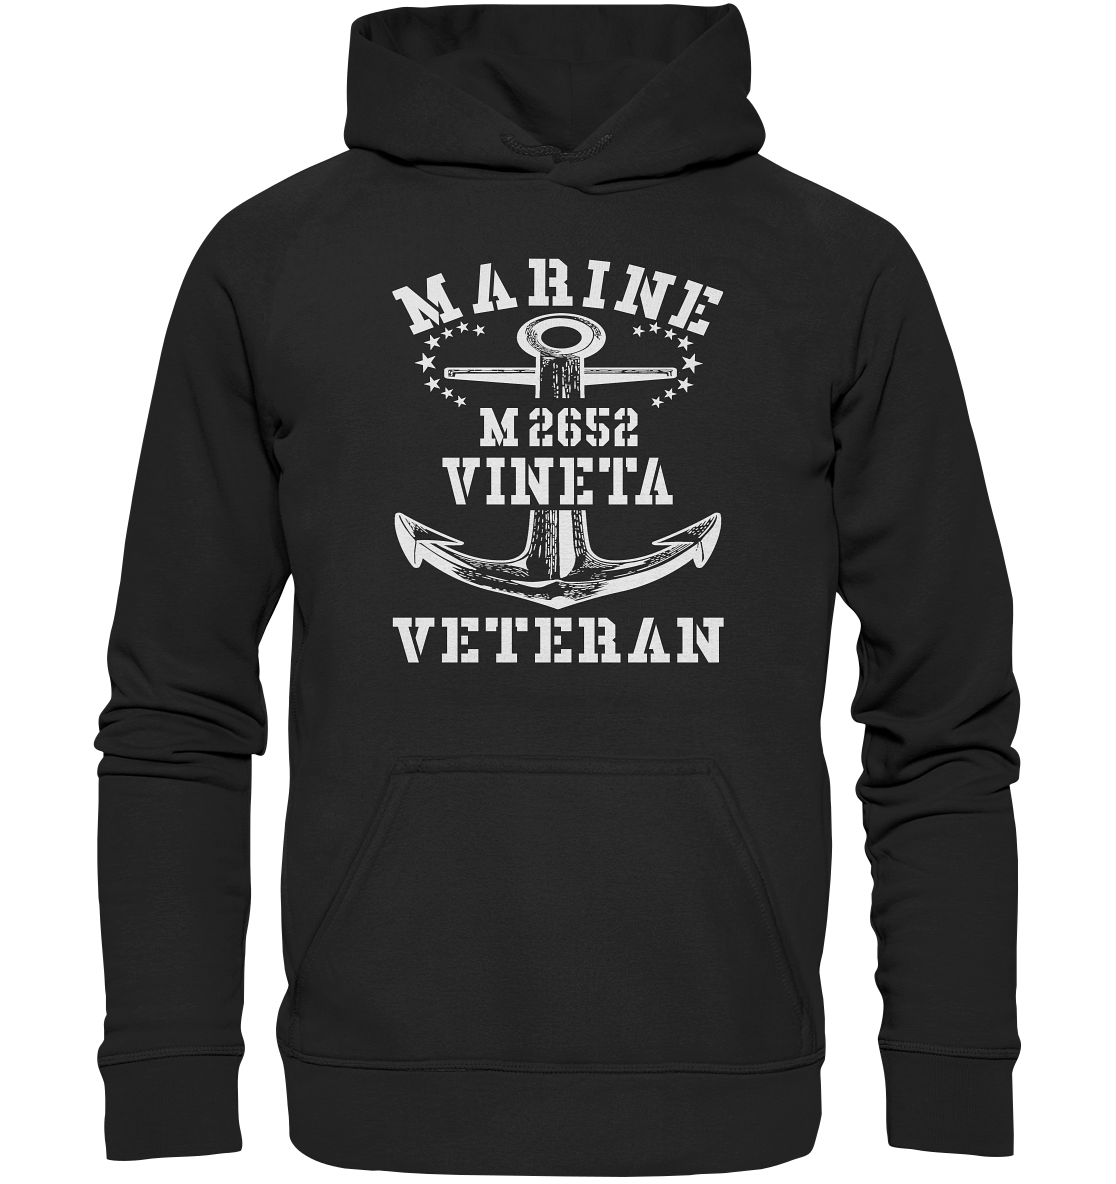 BiMi M2652 VINETA Marine Veteran - Basic Unisex Hoodie